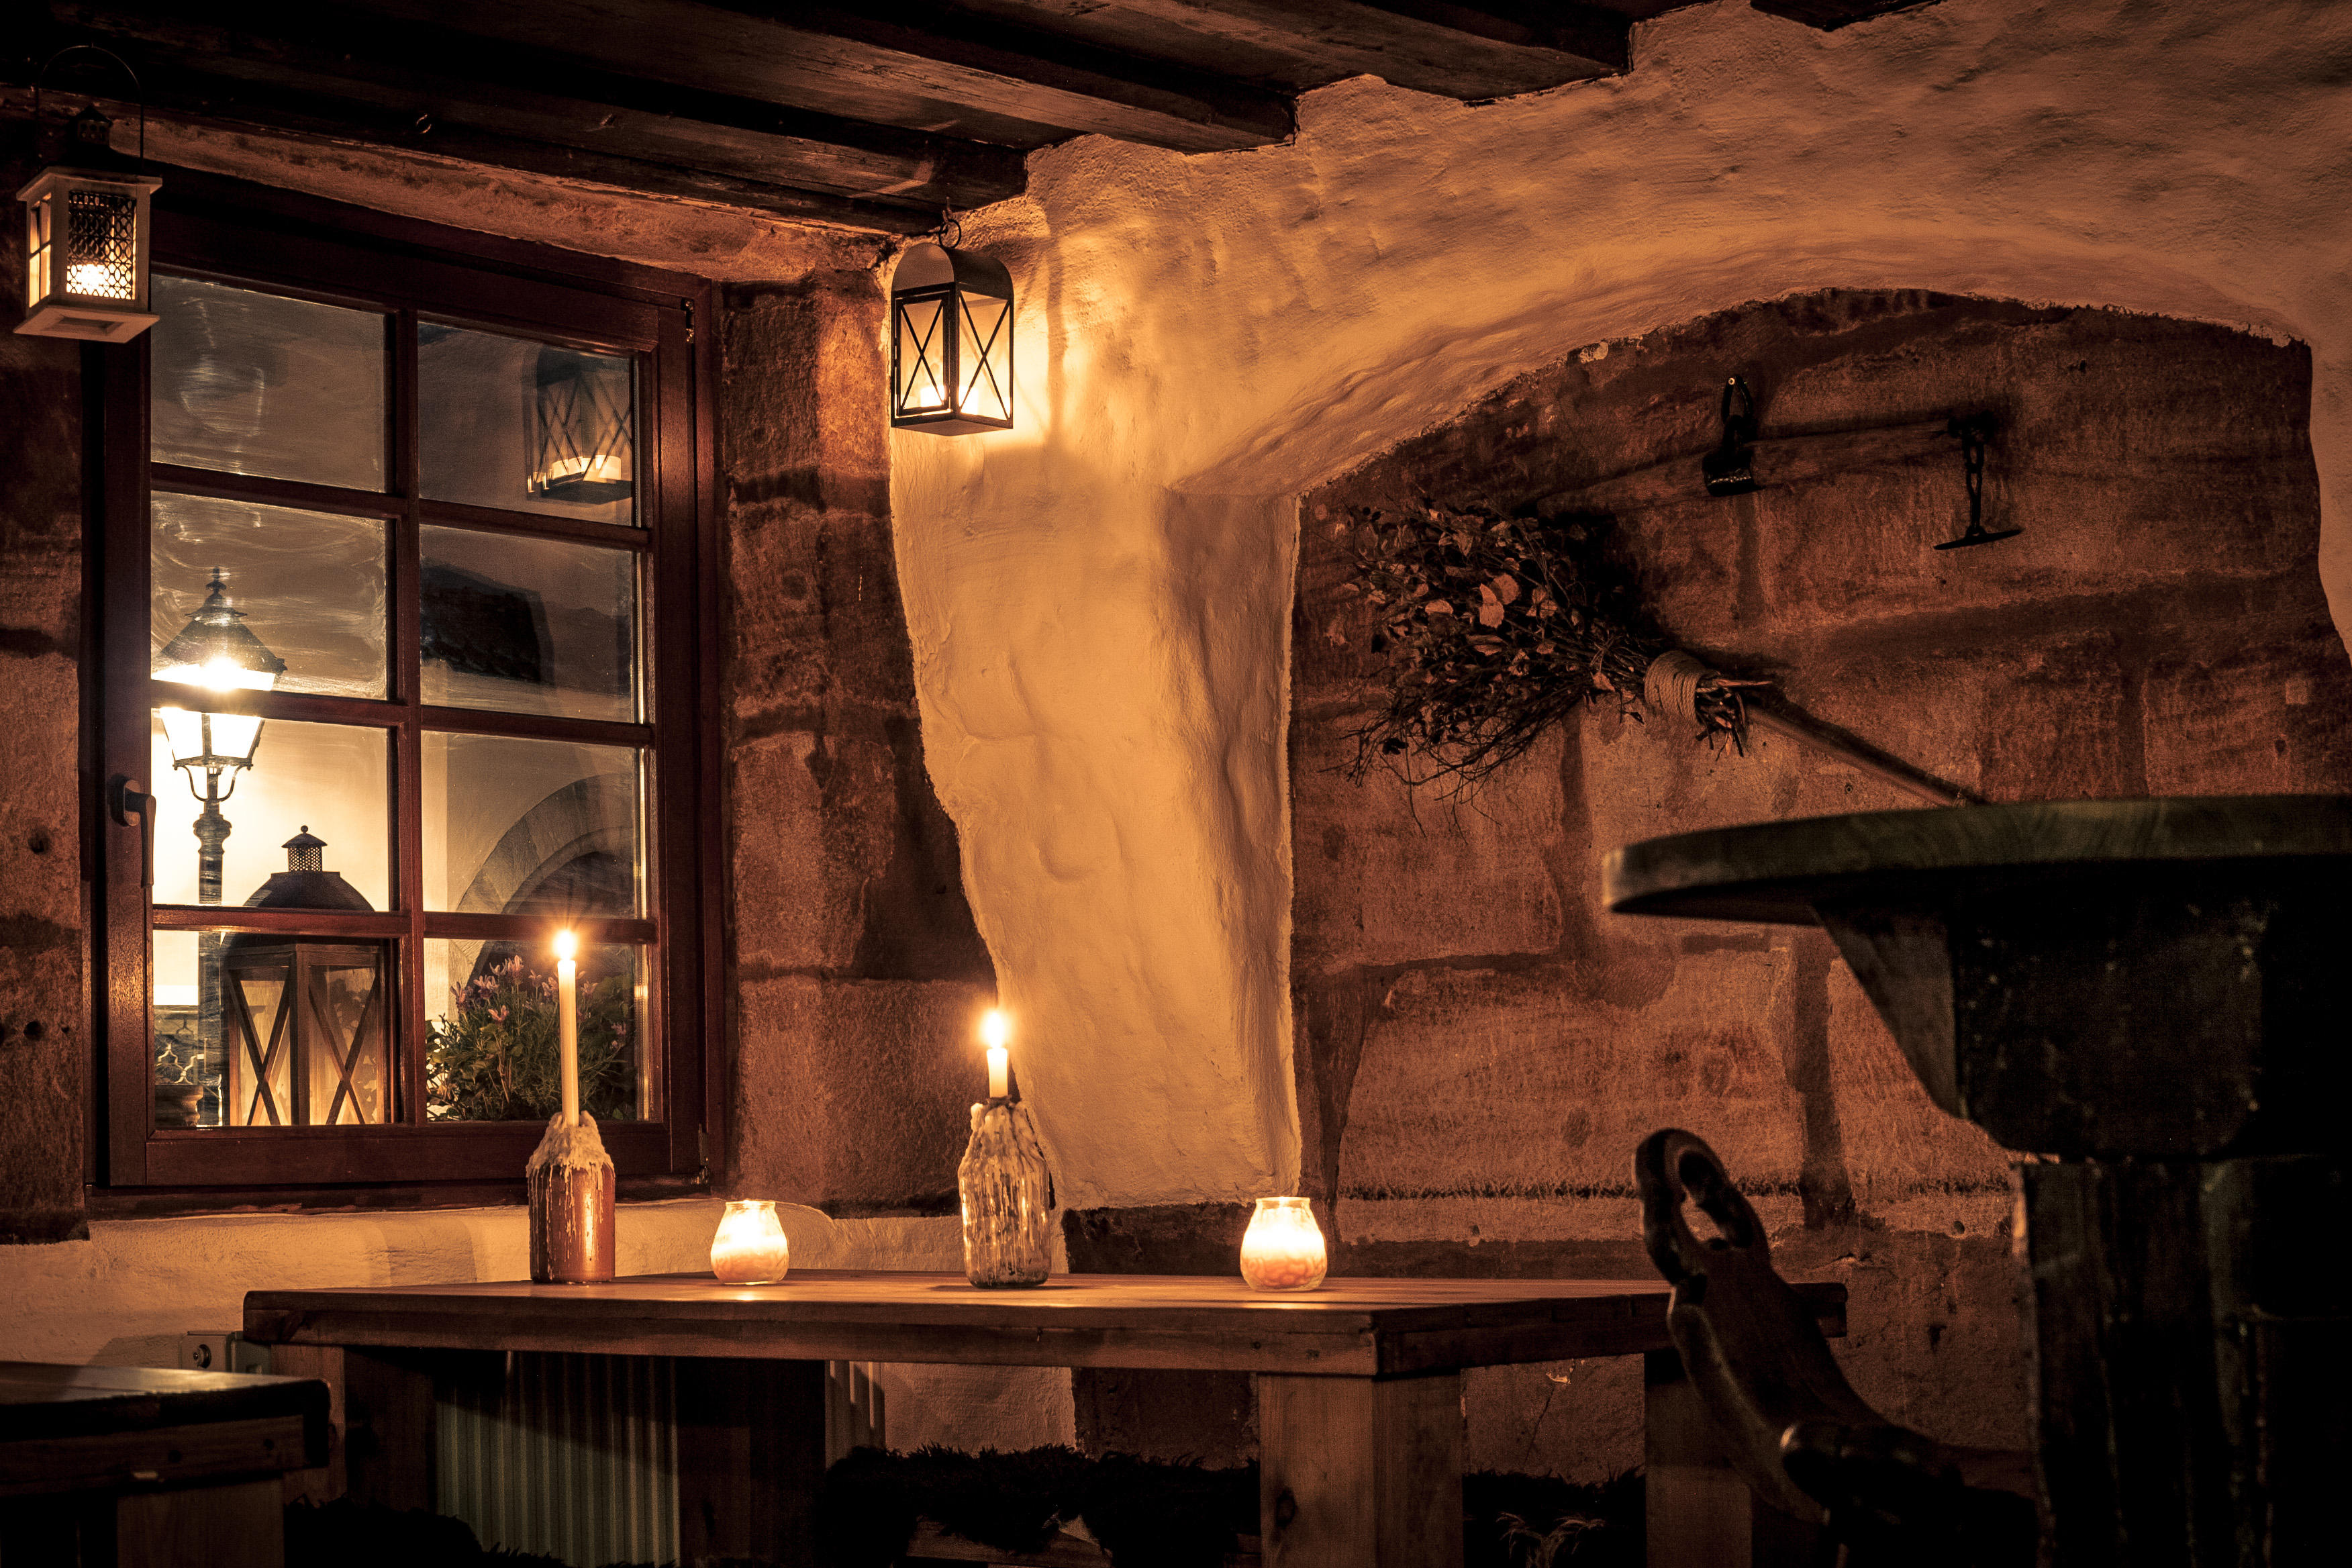 Bild 7 Finyas Taverne in der Altsatadt in Nürnberg